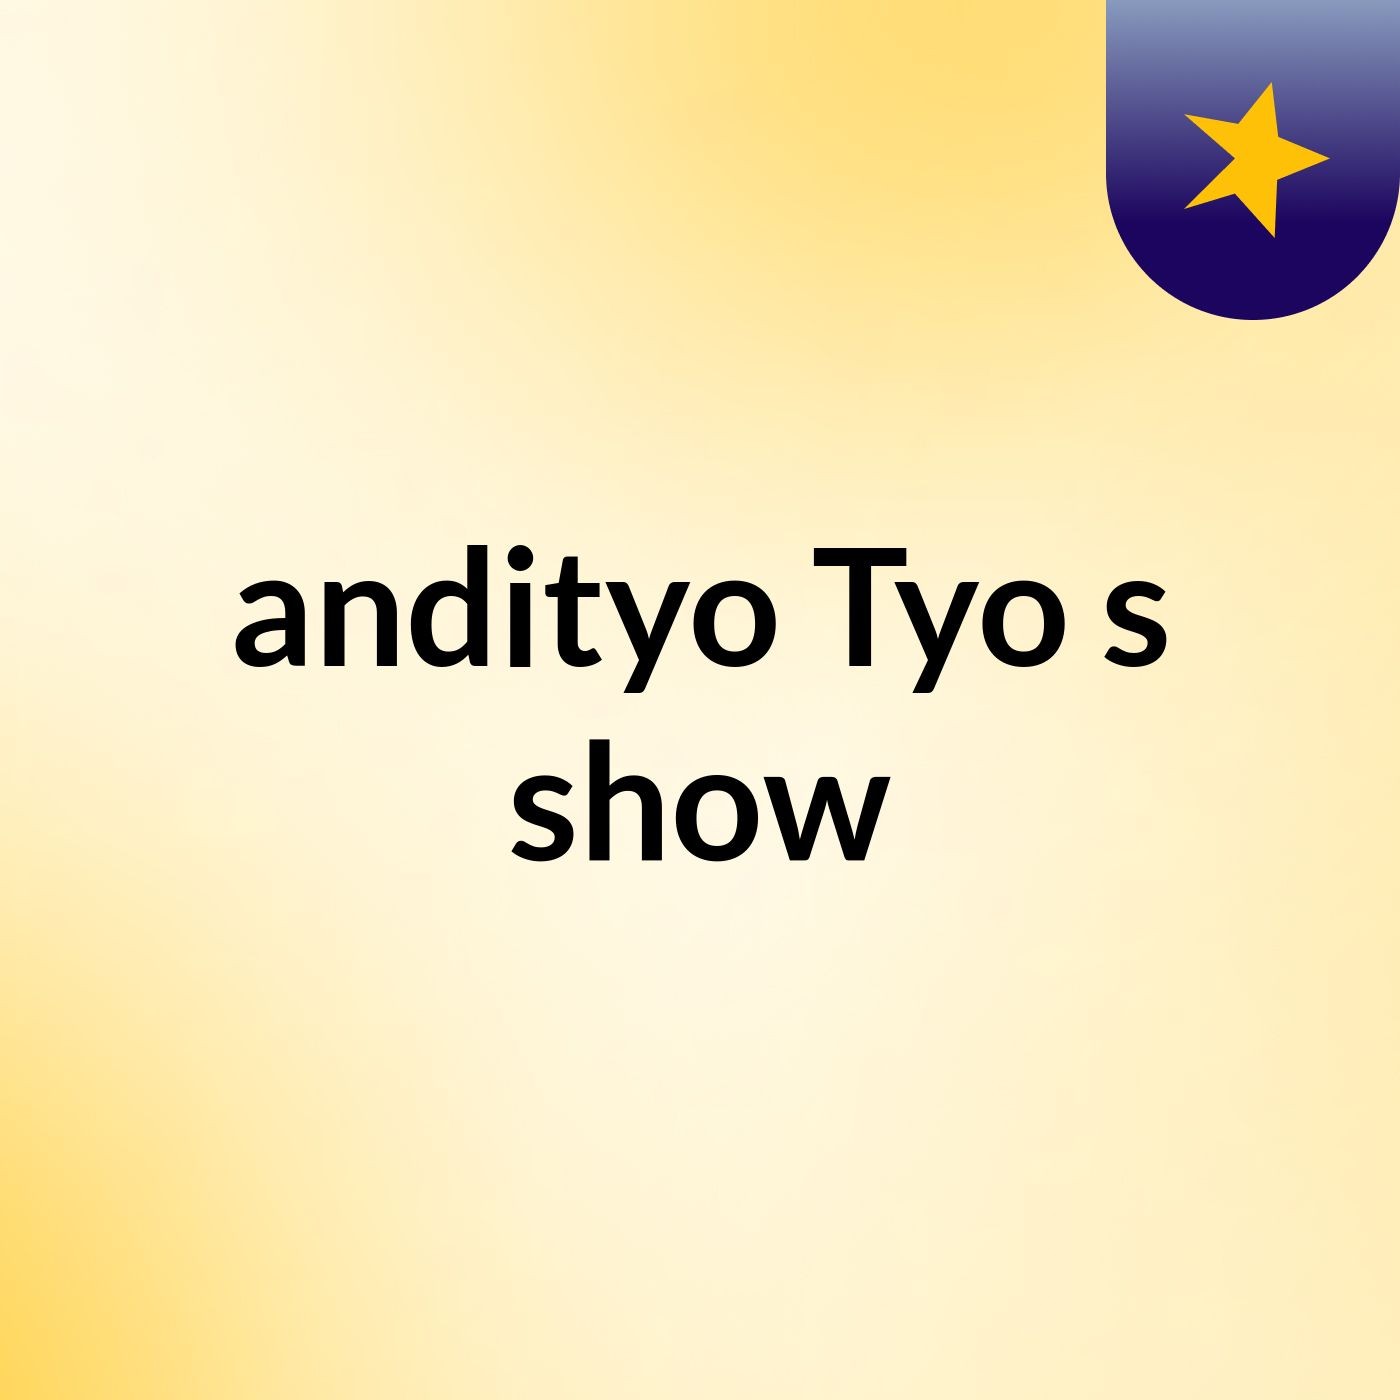 andityo Tyo's show